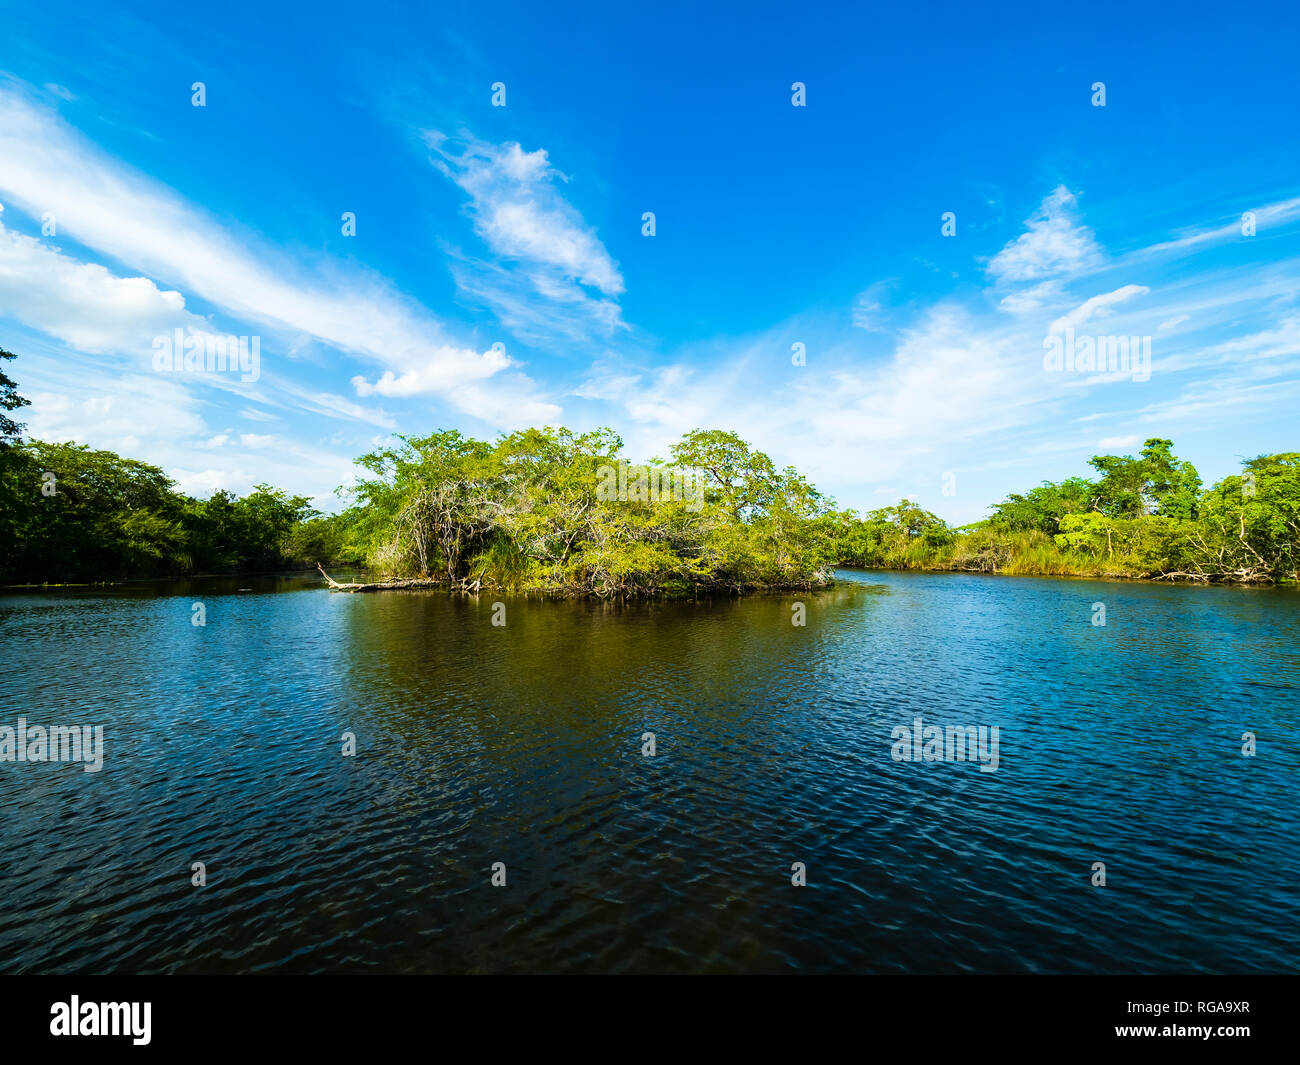 Central America, Belize, Yucatan peninsula, New River, lagoon Stock Photo